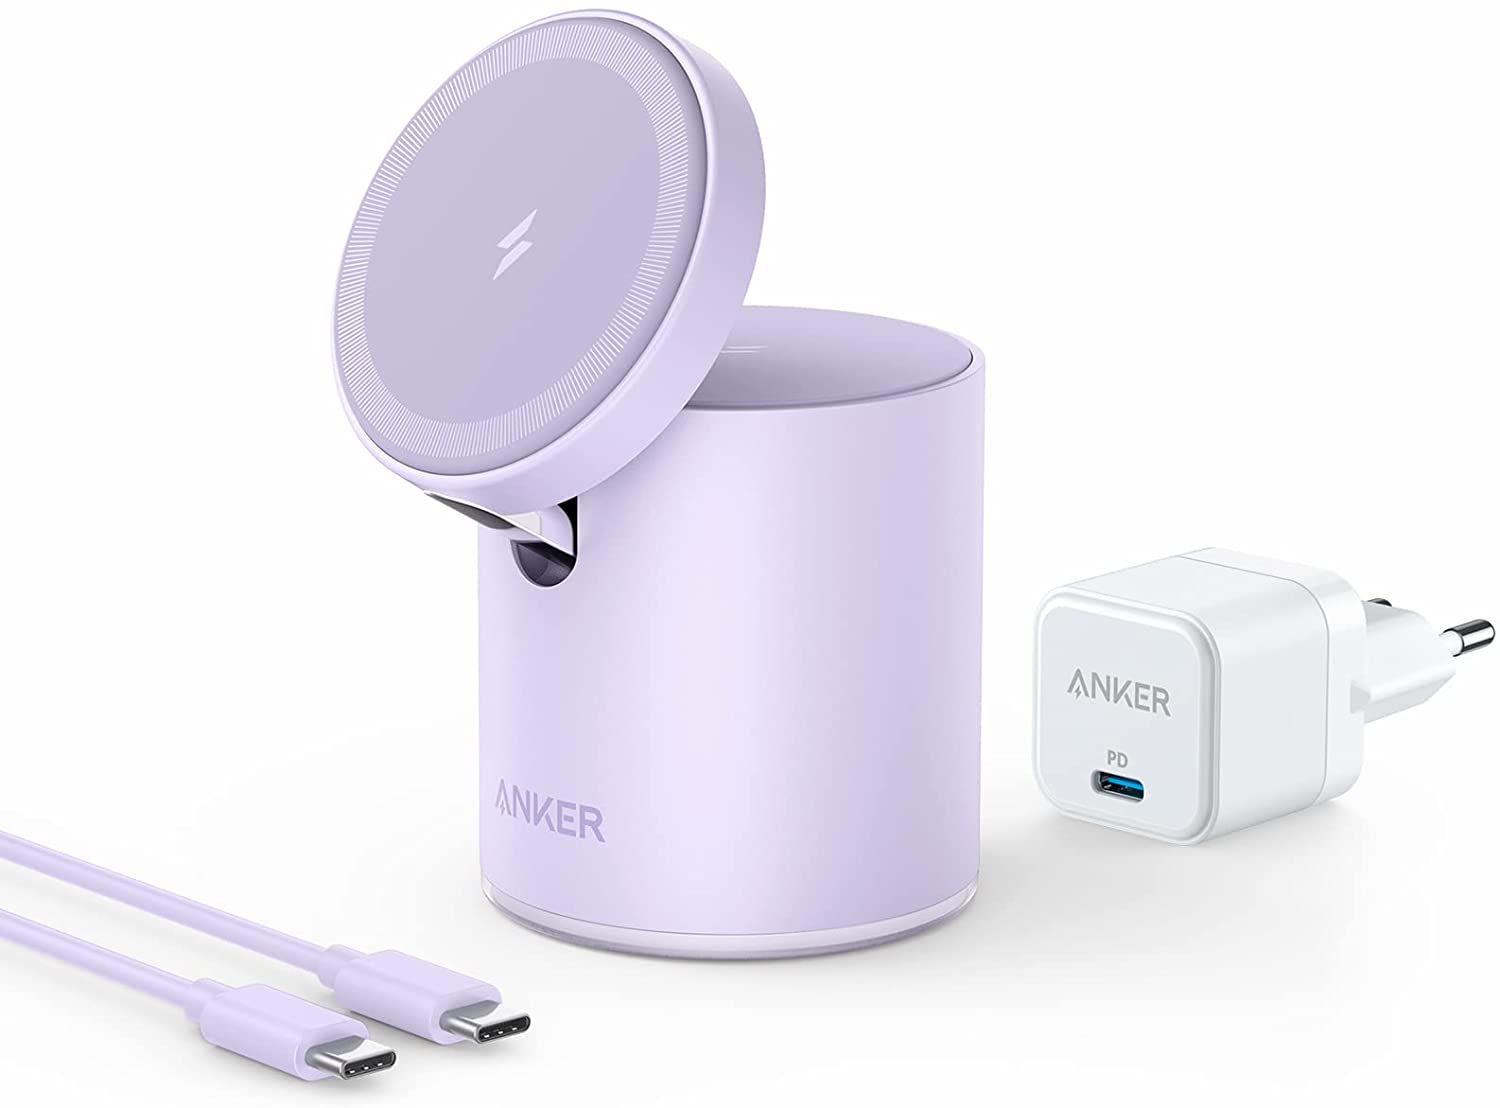 MagGo: Anker stellt 5 neue MagSafe-Produkte für iPhone 12 und iPhone 13 vor  -  News